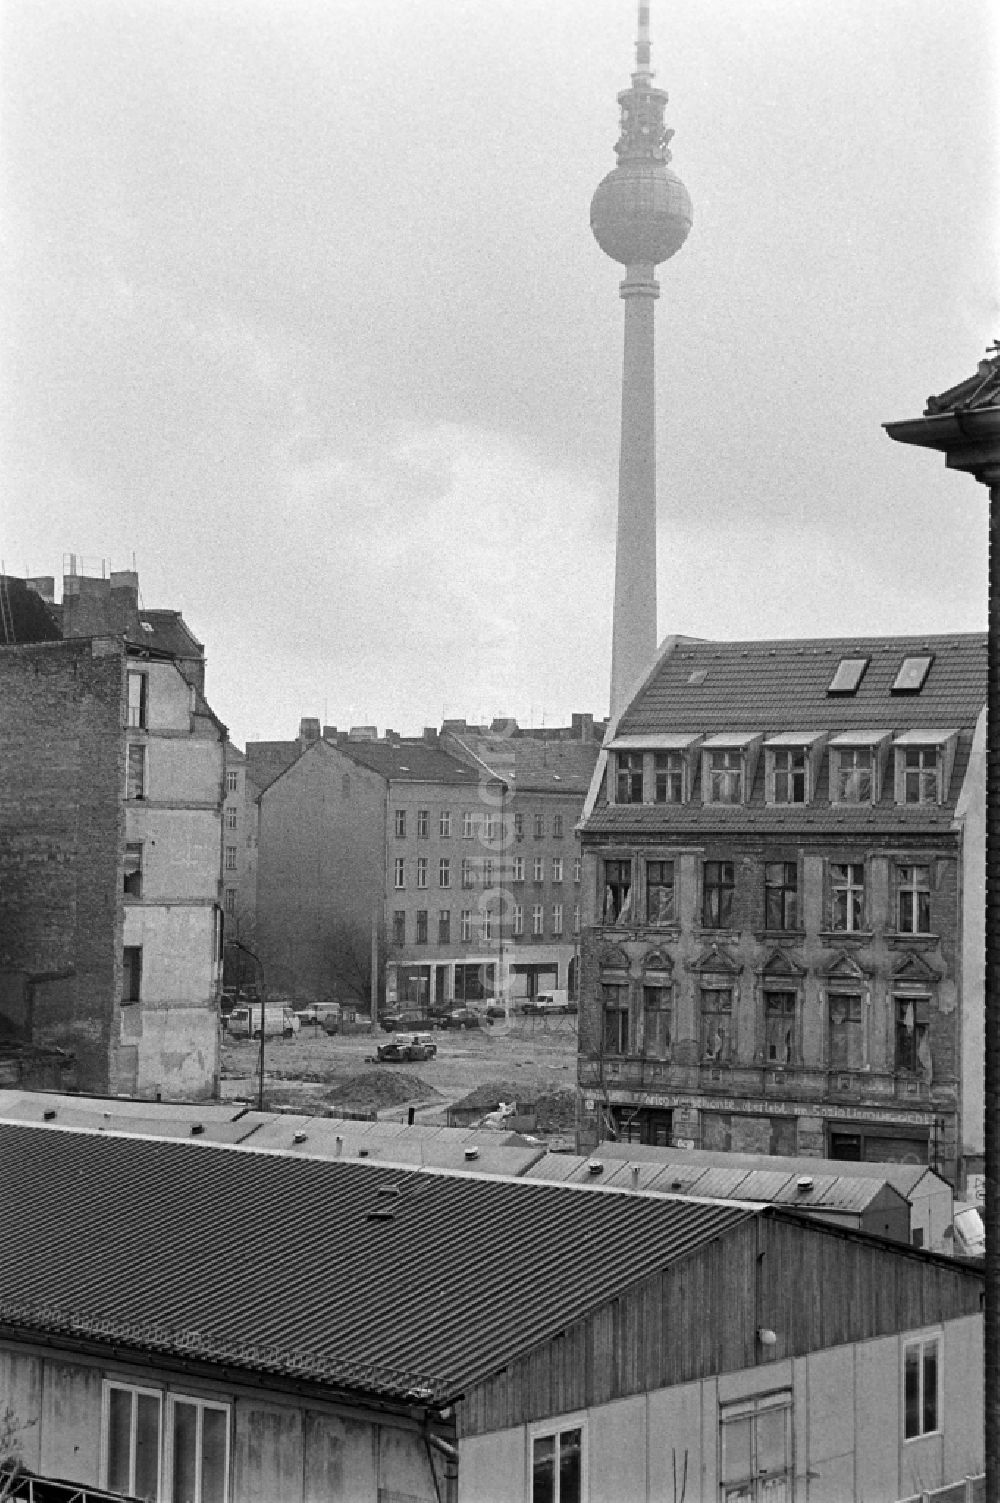 Berlin: Scheunenviertel in Berlin-Mitte